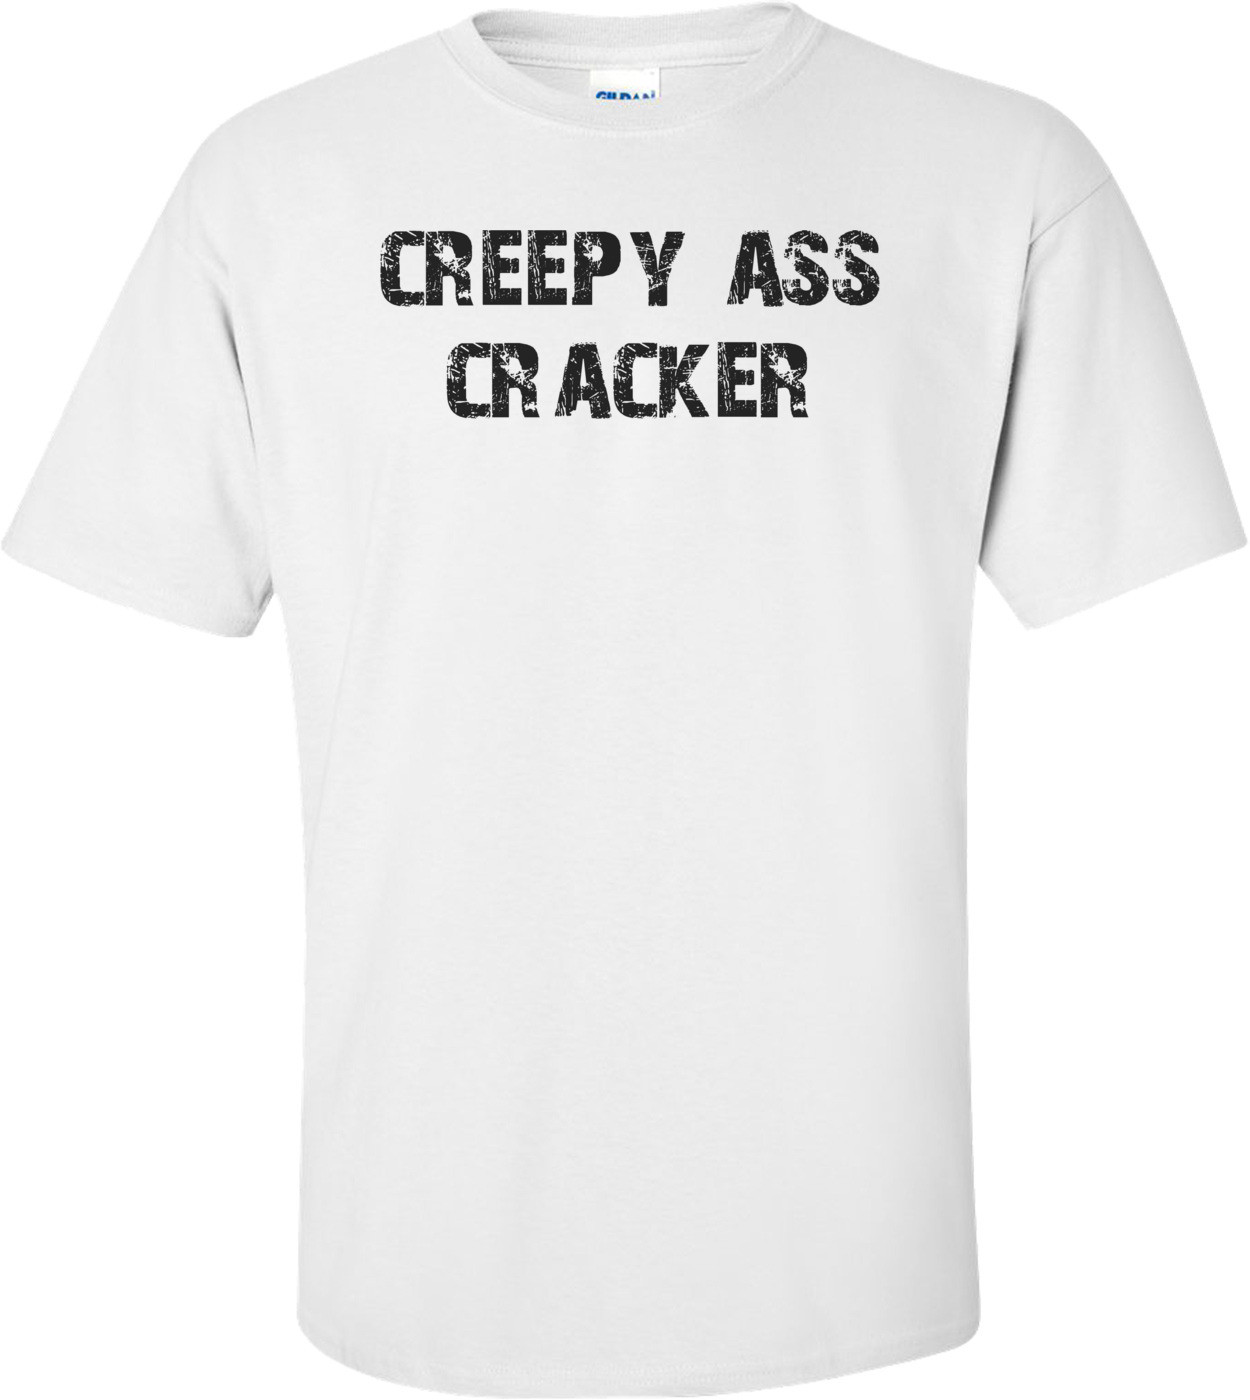 creepy ass cracker Shirt